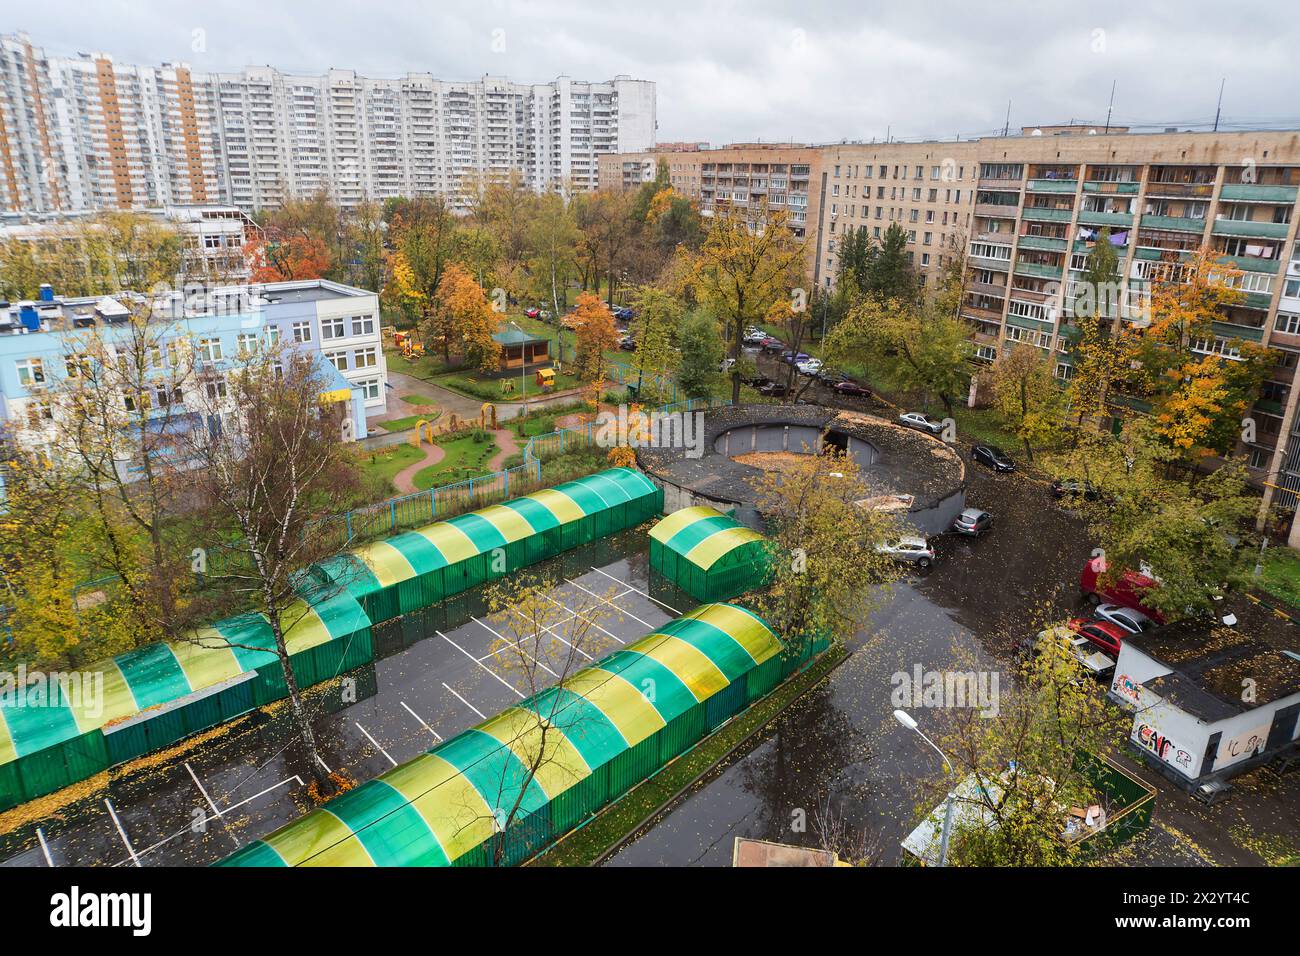 MOSKAU - 6. OKT: Blick in den Innenhof Bogorodskoe im Herbst (Blick nach unten) am 6. Oktober 2012 in Moskau, Russland. Garagen in runden Gebäuden r Stockfoto